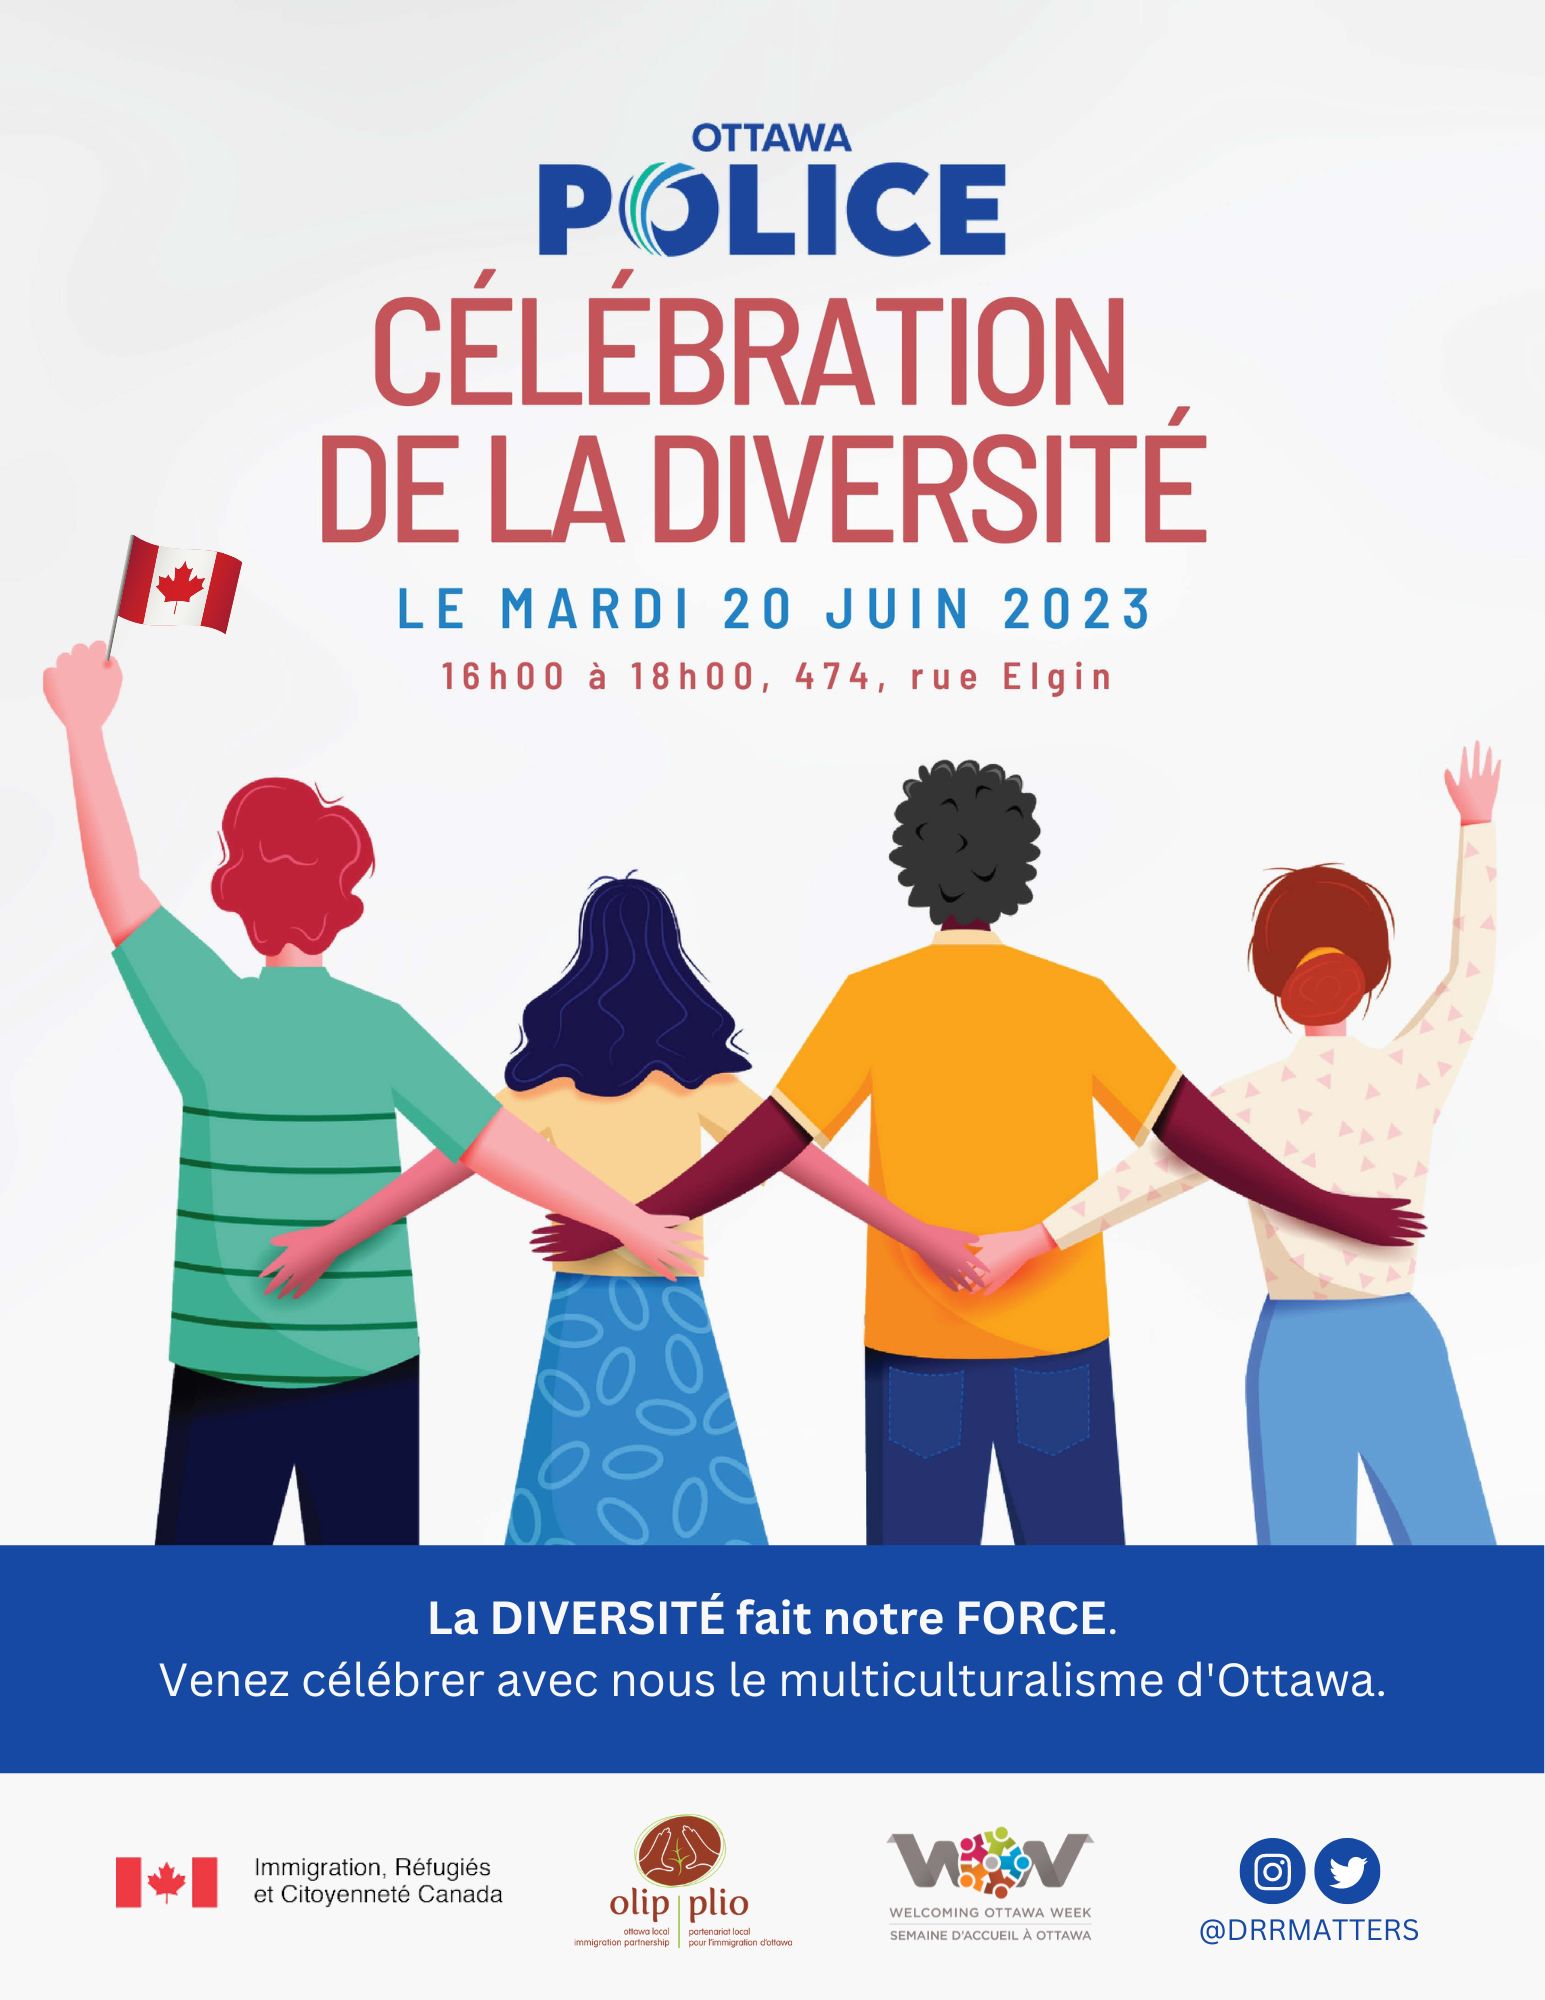 C’est la septième édition annuelle de la Fête de la diversité de la Police d’Ottawa